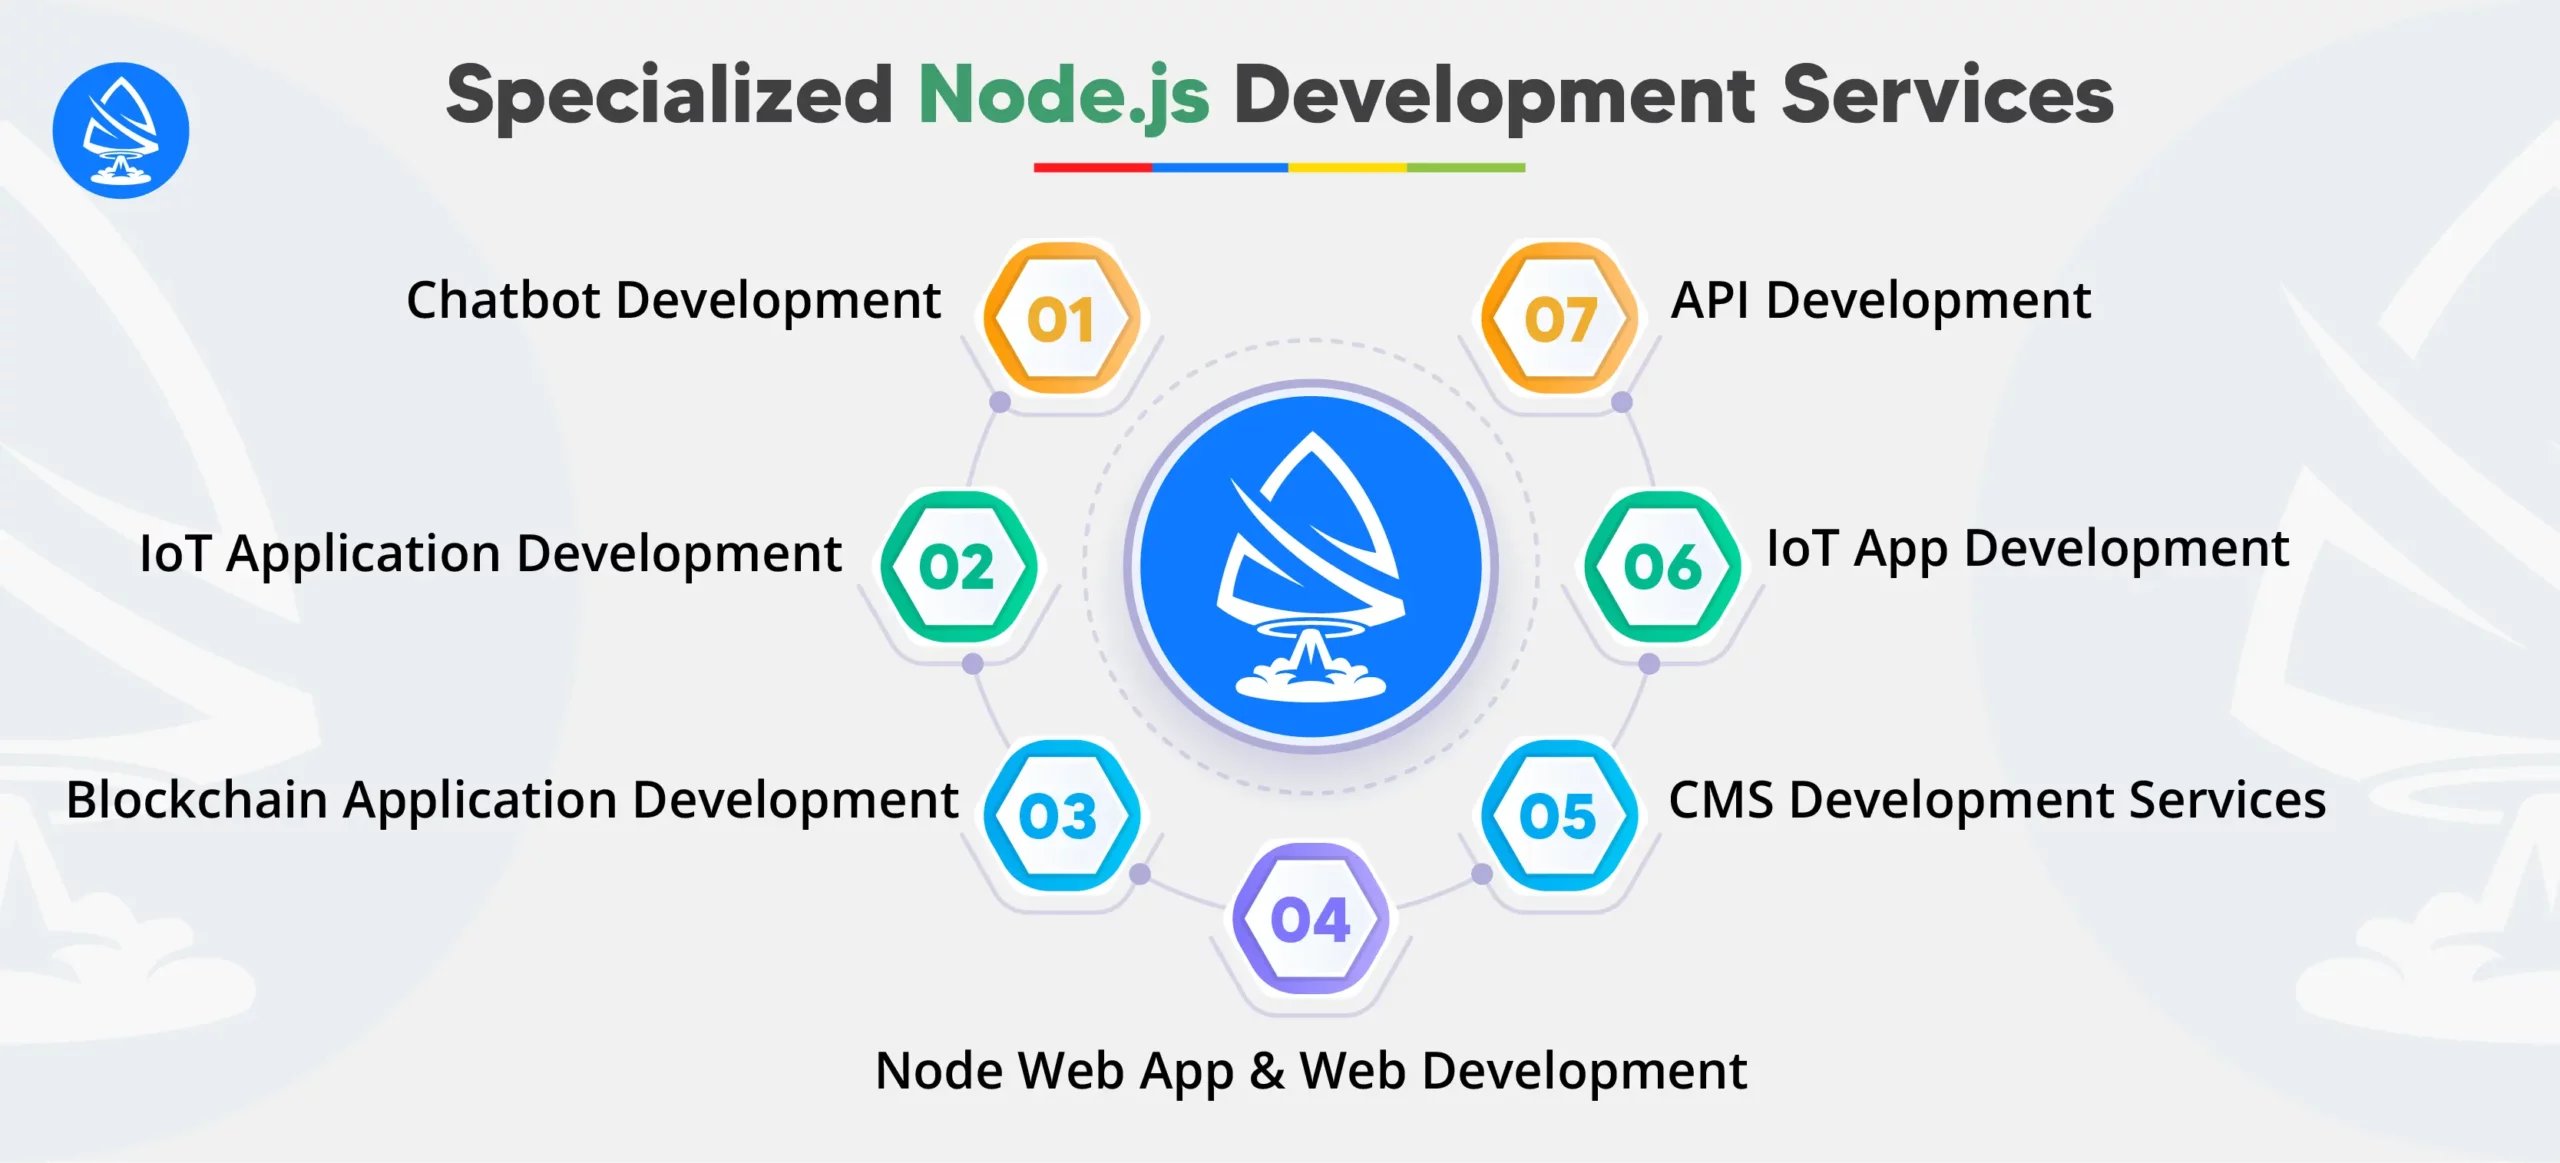 3. Specialized Node.js Development Services 